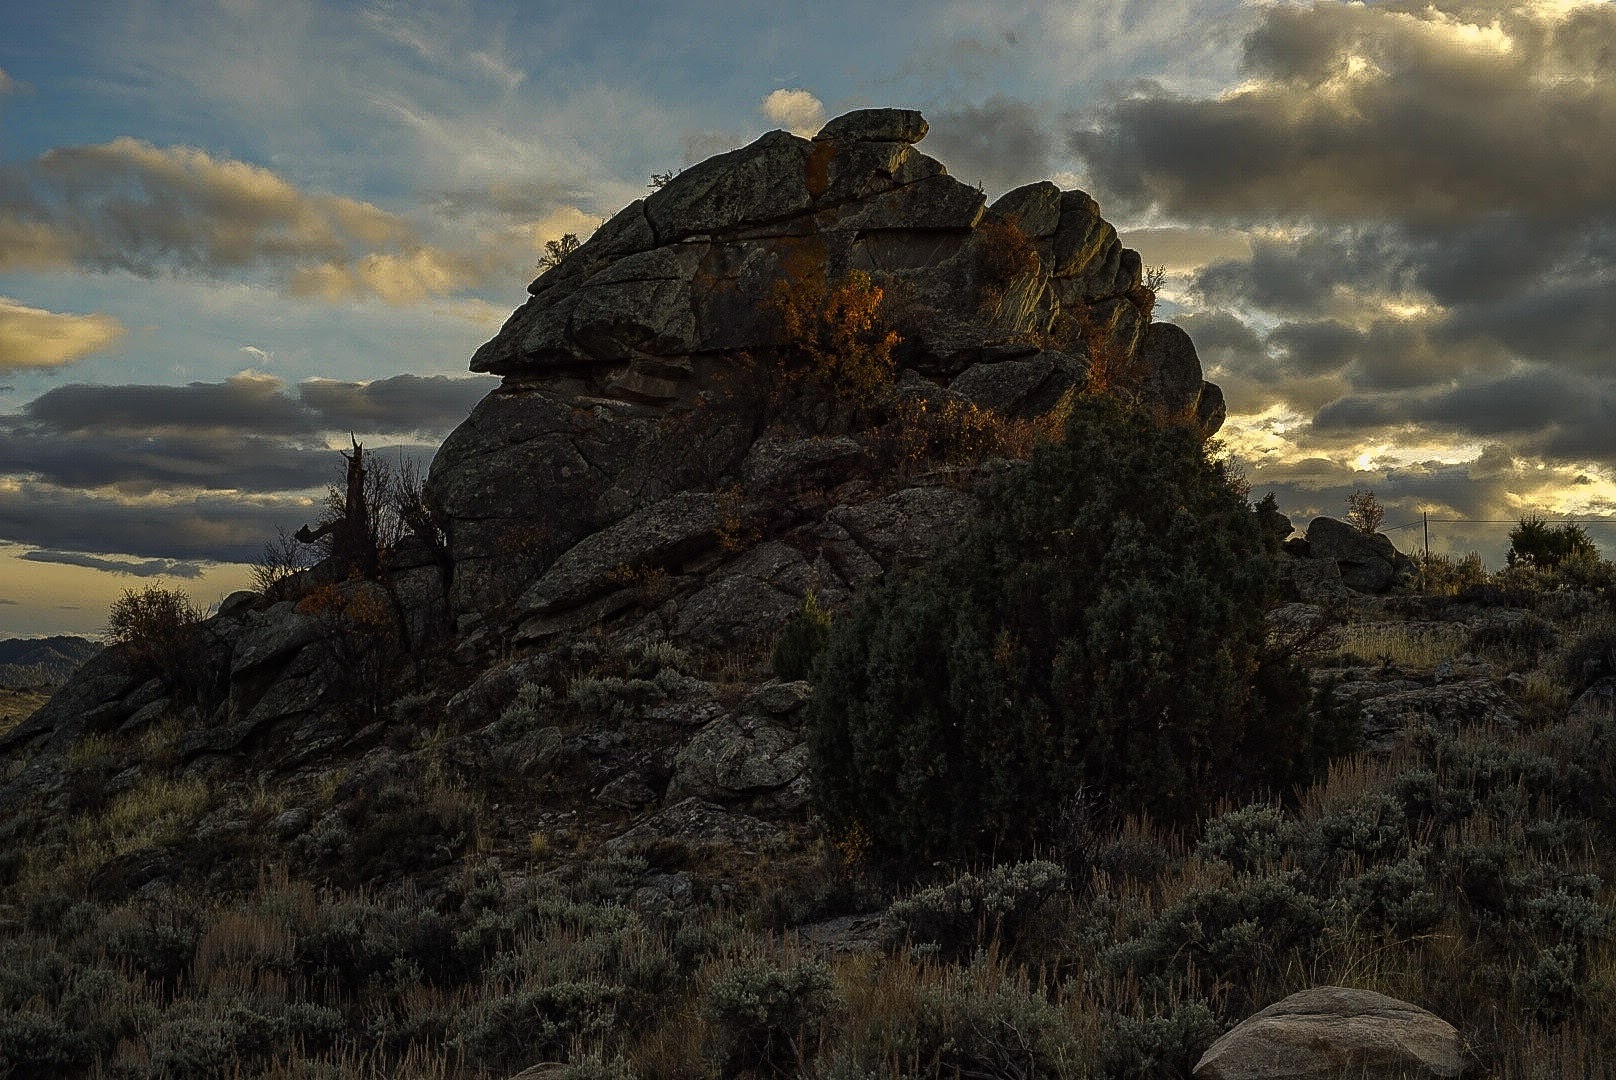 Mythic Sky, West: Wyoming landscape, from Brush Creek Artist Residency, Steve Giovinco